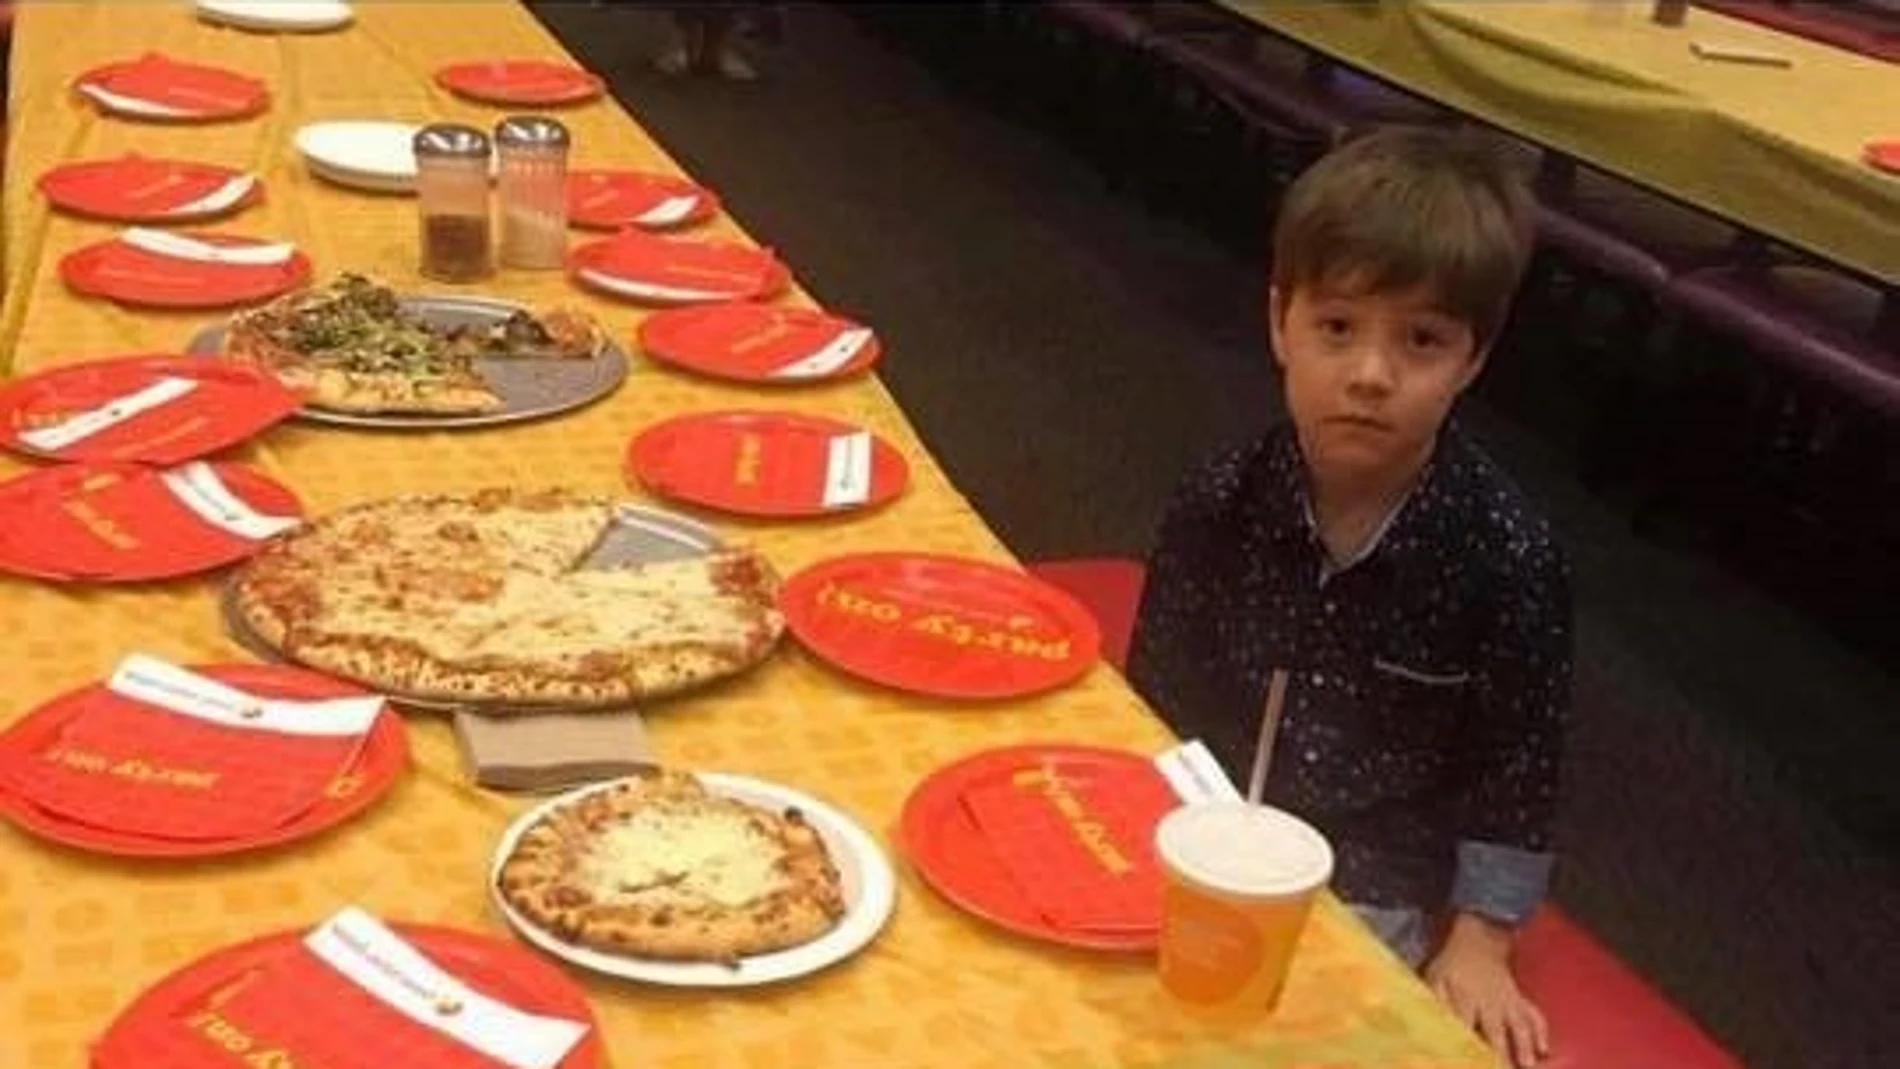 El niño solo en su fiesta de cumpleaños